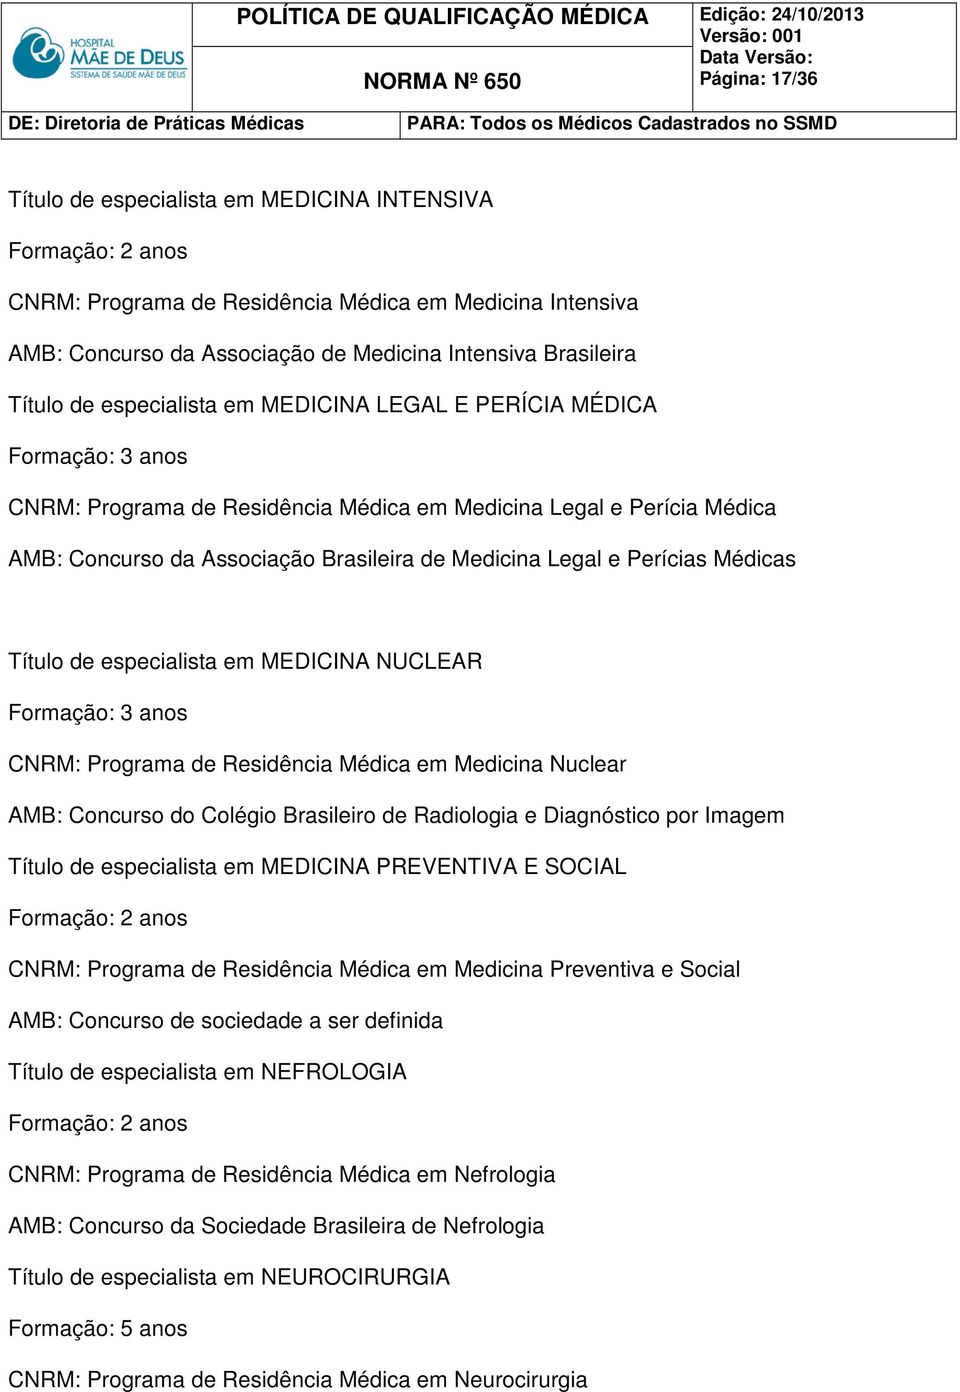 Título de especialista em MEDICINA NUCLEAR CNRM: Programa de Residência Médica em Medicina Nuclear AMB: Concurso do Colégio Brasileiro de Radiologia e Diagnóstico por Imagem Título de especialista em